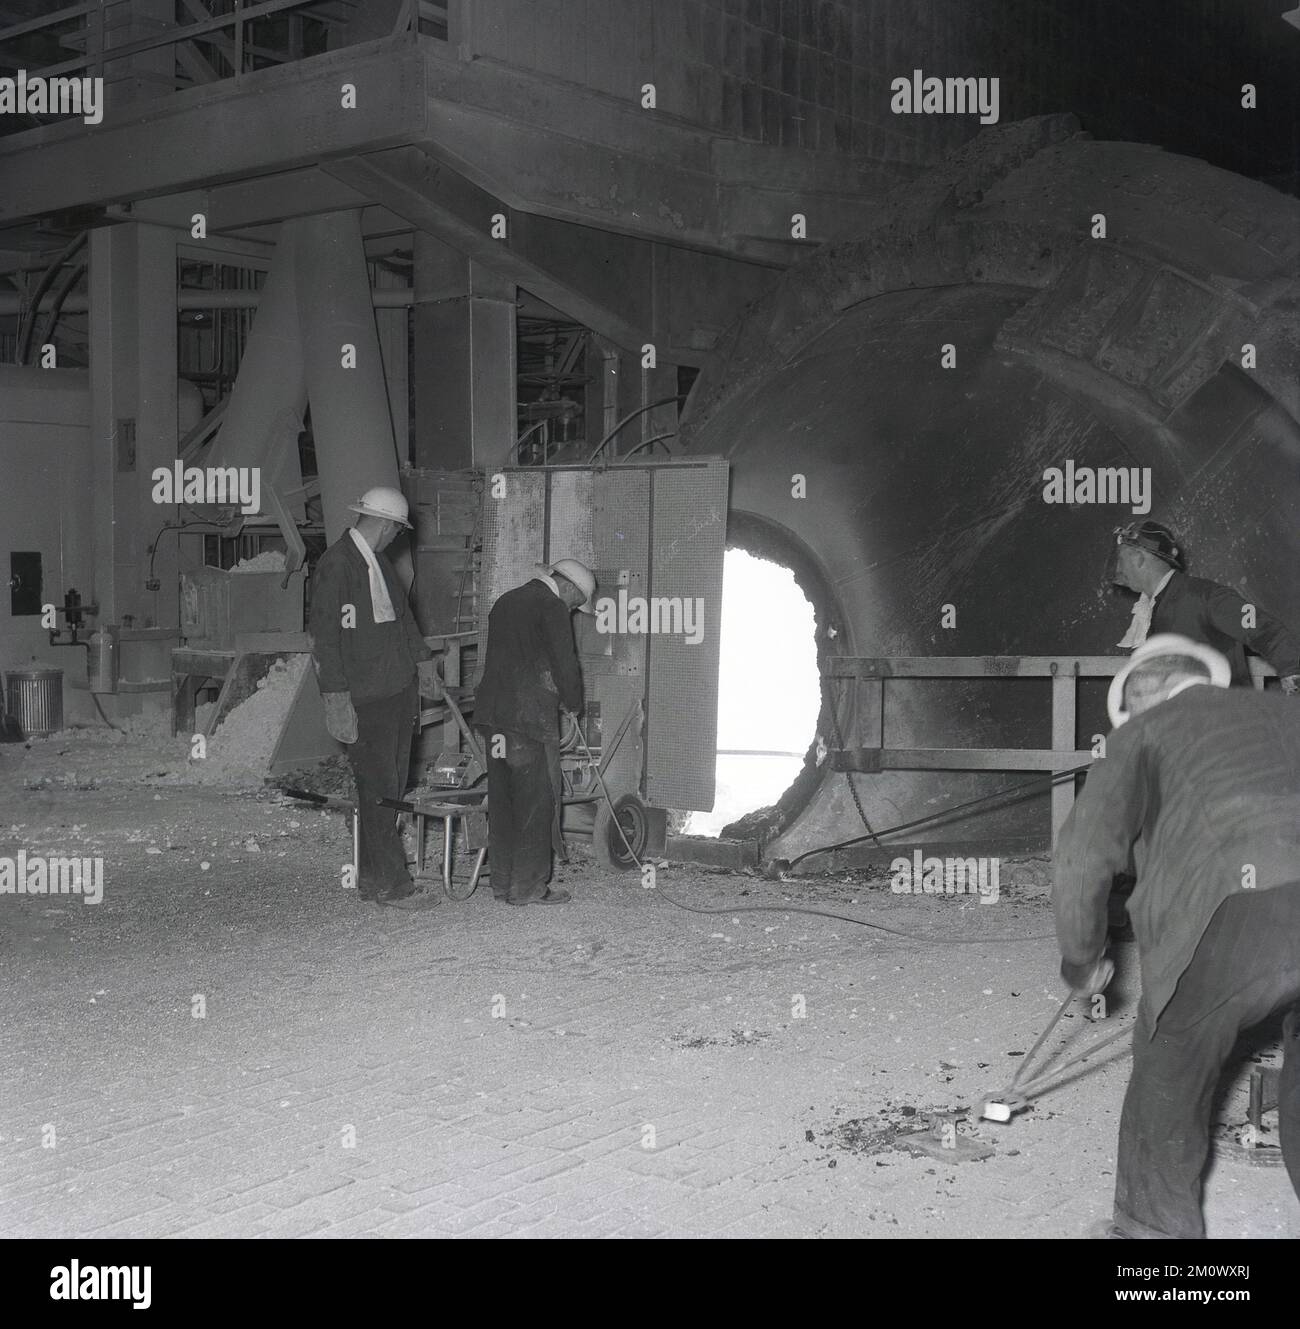 1950s, historique, aciéries, deux aciéries dans un four, debout derrière une garde de protection, l'une tenant une barre d'acier dans le four, Abbey Works, Port Talbot, pays de Galles du Sud, Royaume-Uni. Banque D'Images